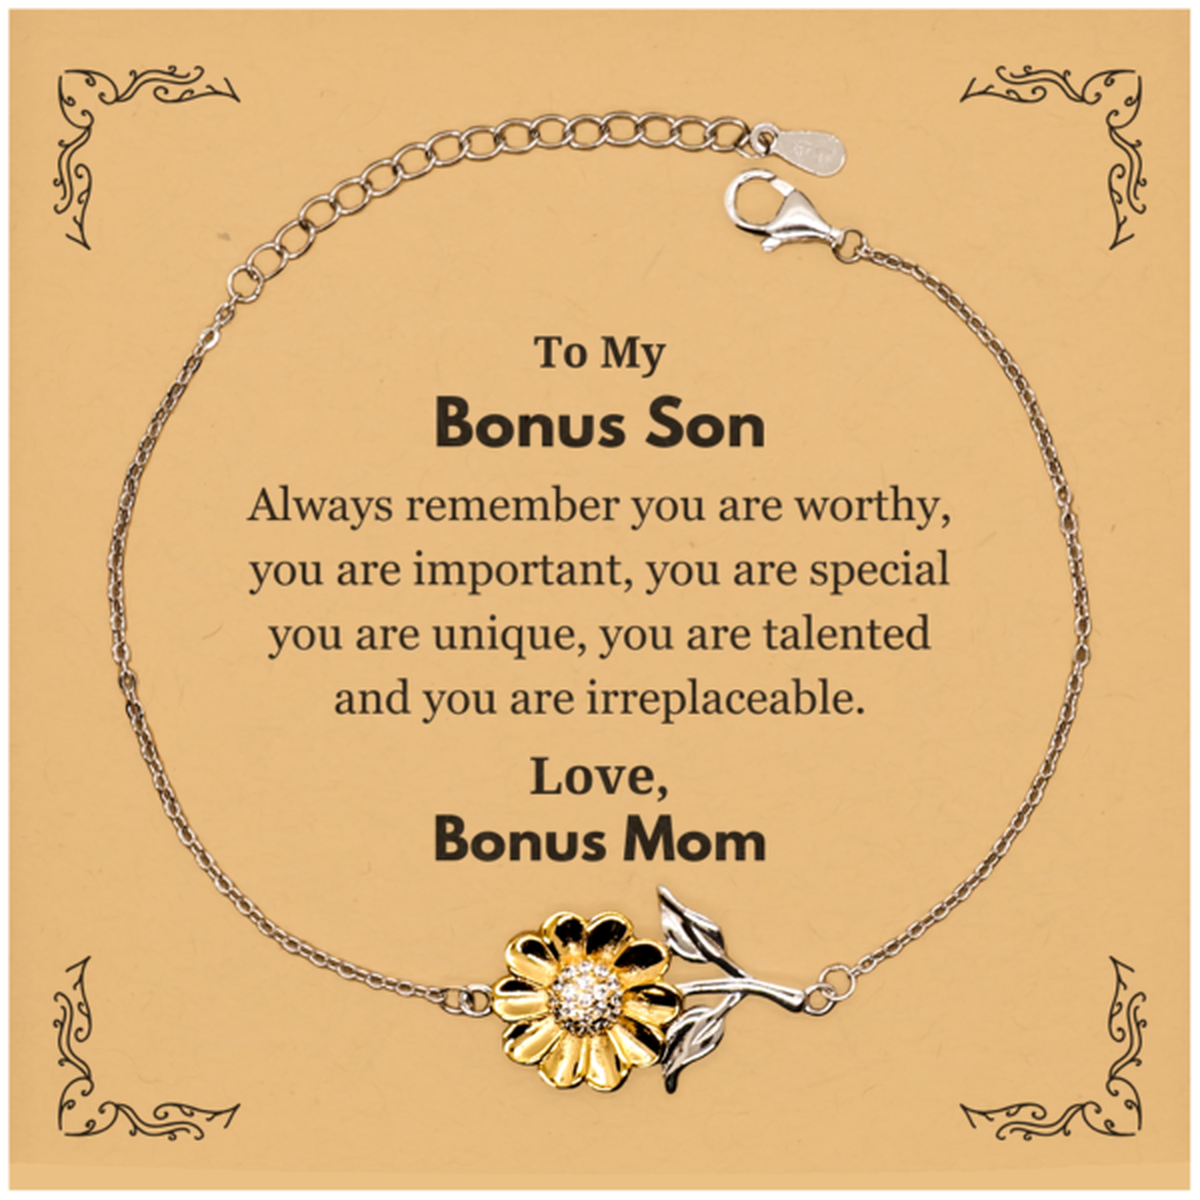 Bonus Son Birthday Gifts from Bonus Mom, Inspirational Sunflower Bracelet for Bonus Son Christmas Graduation Gifts for Bonus Son Always remember you are worthy, you are important. Love, Bonus Mom